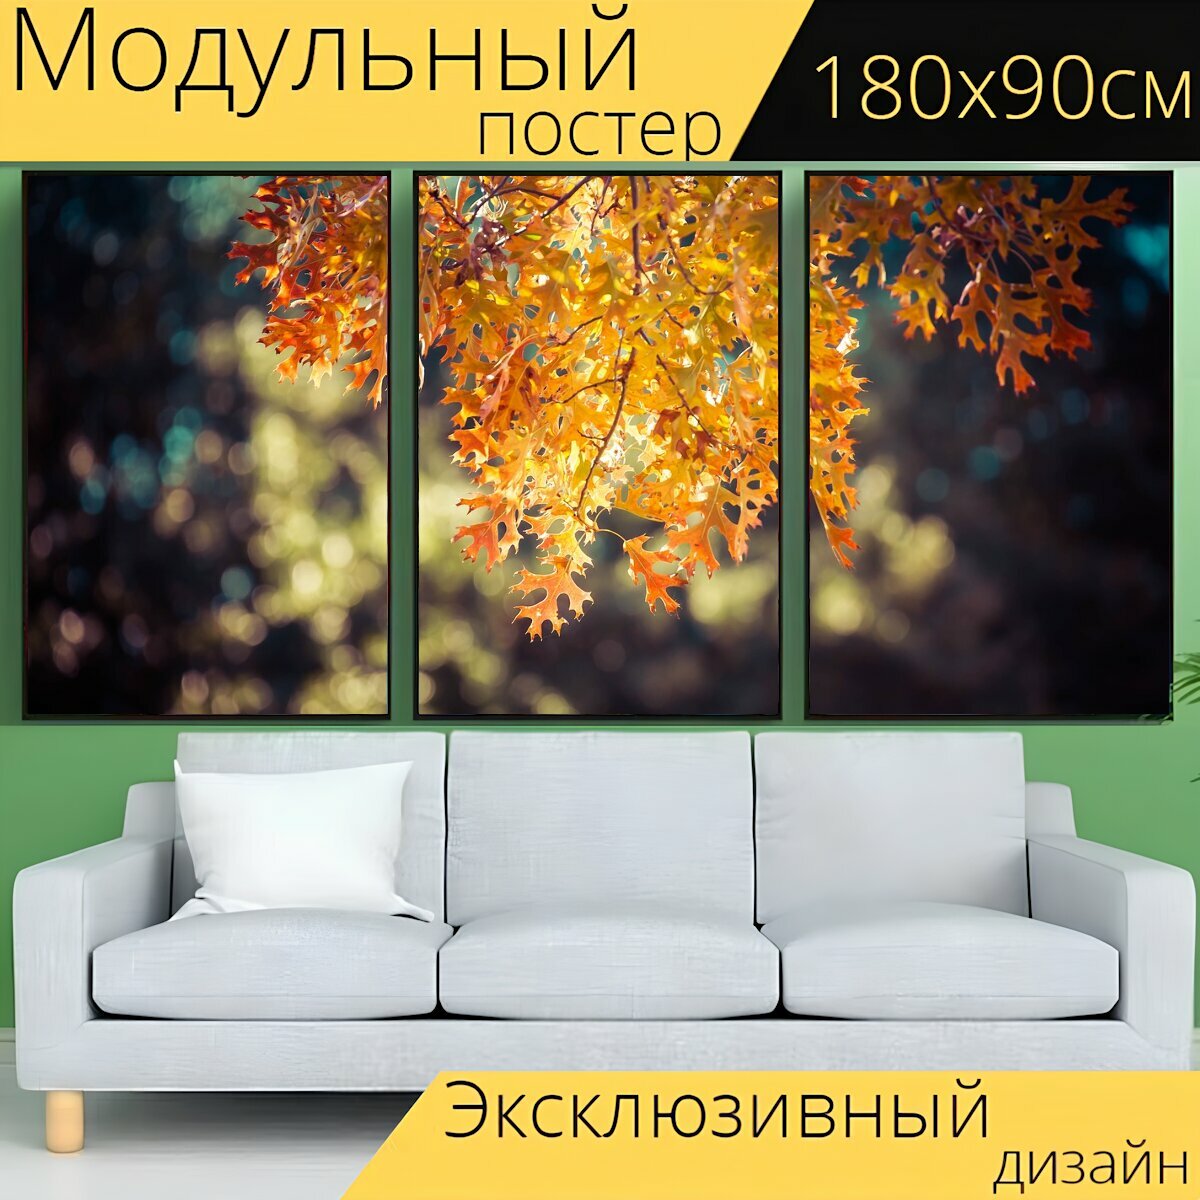 Модульный постер "Листьев, осень, падение" 180 x 90 см. для интерьера